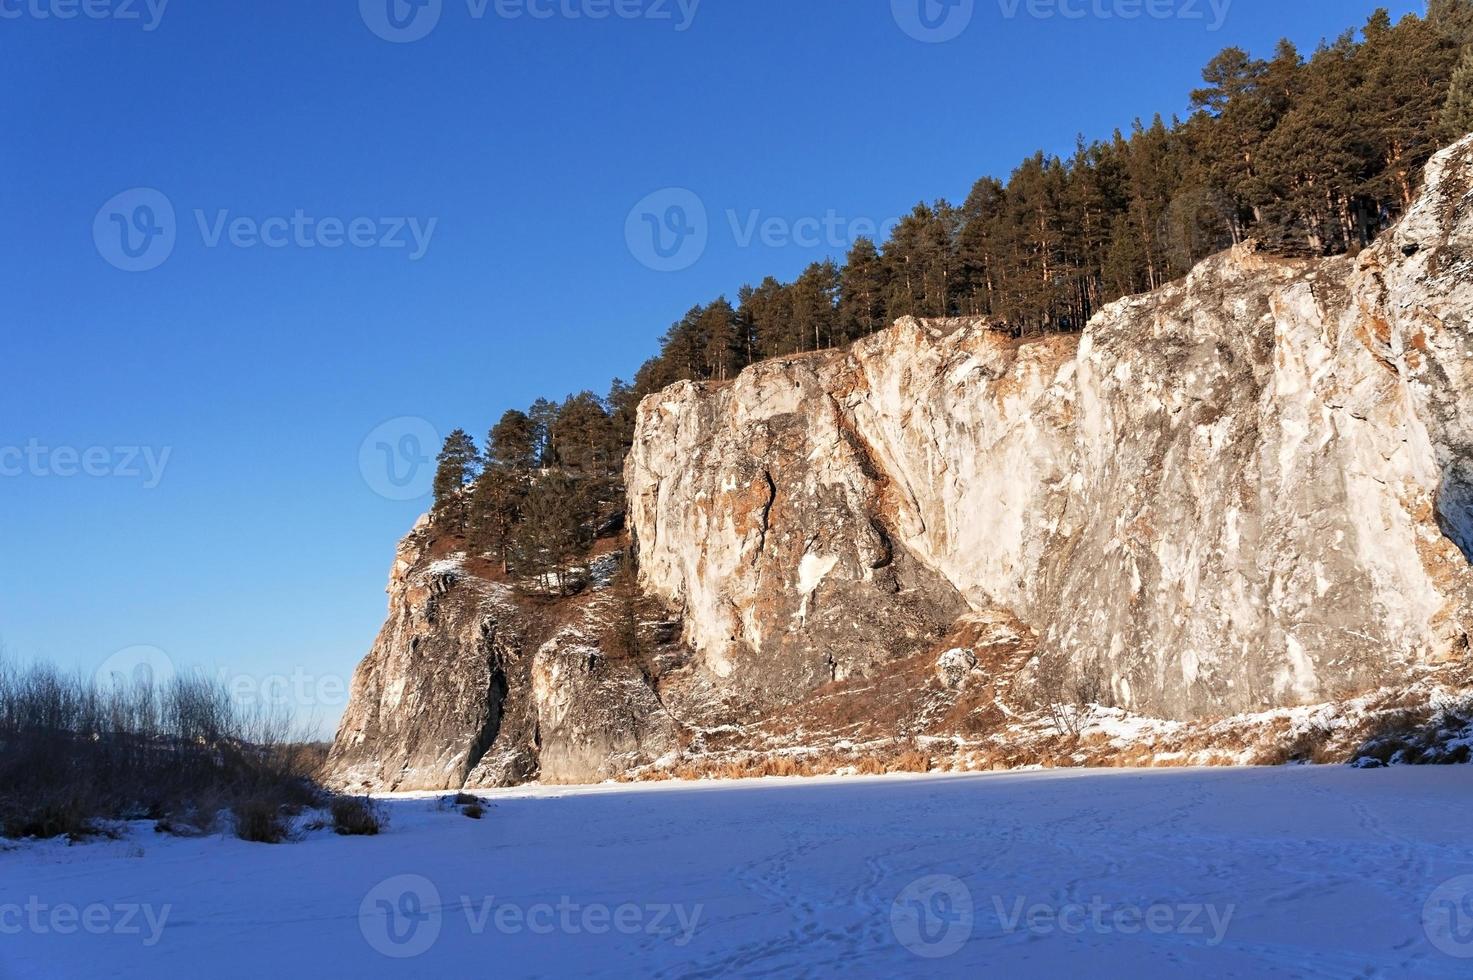 paysage de montagne d'hiver avec des falaises sur une rivière gelée et enneigée. rochers avec pins, nature pittoresque photo